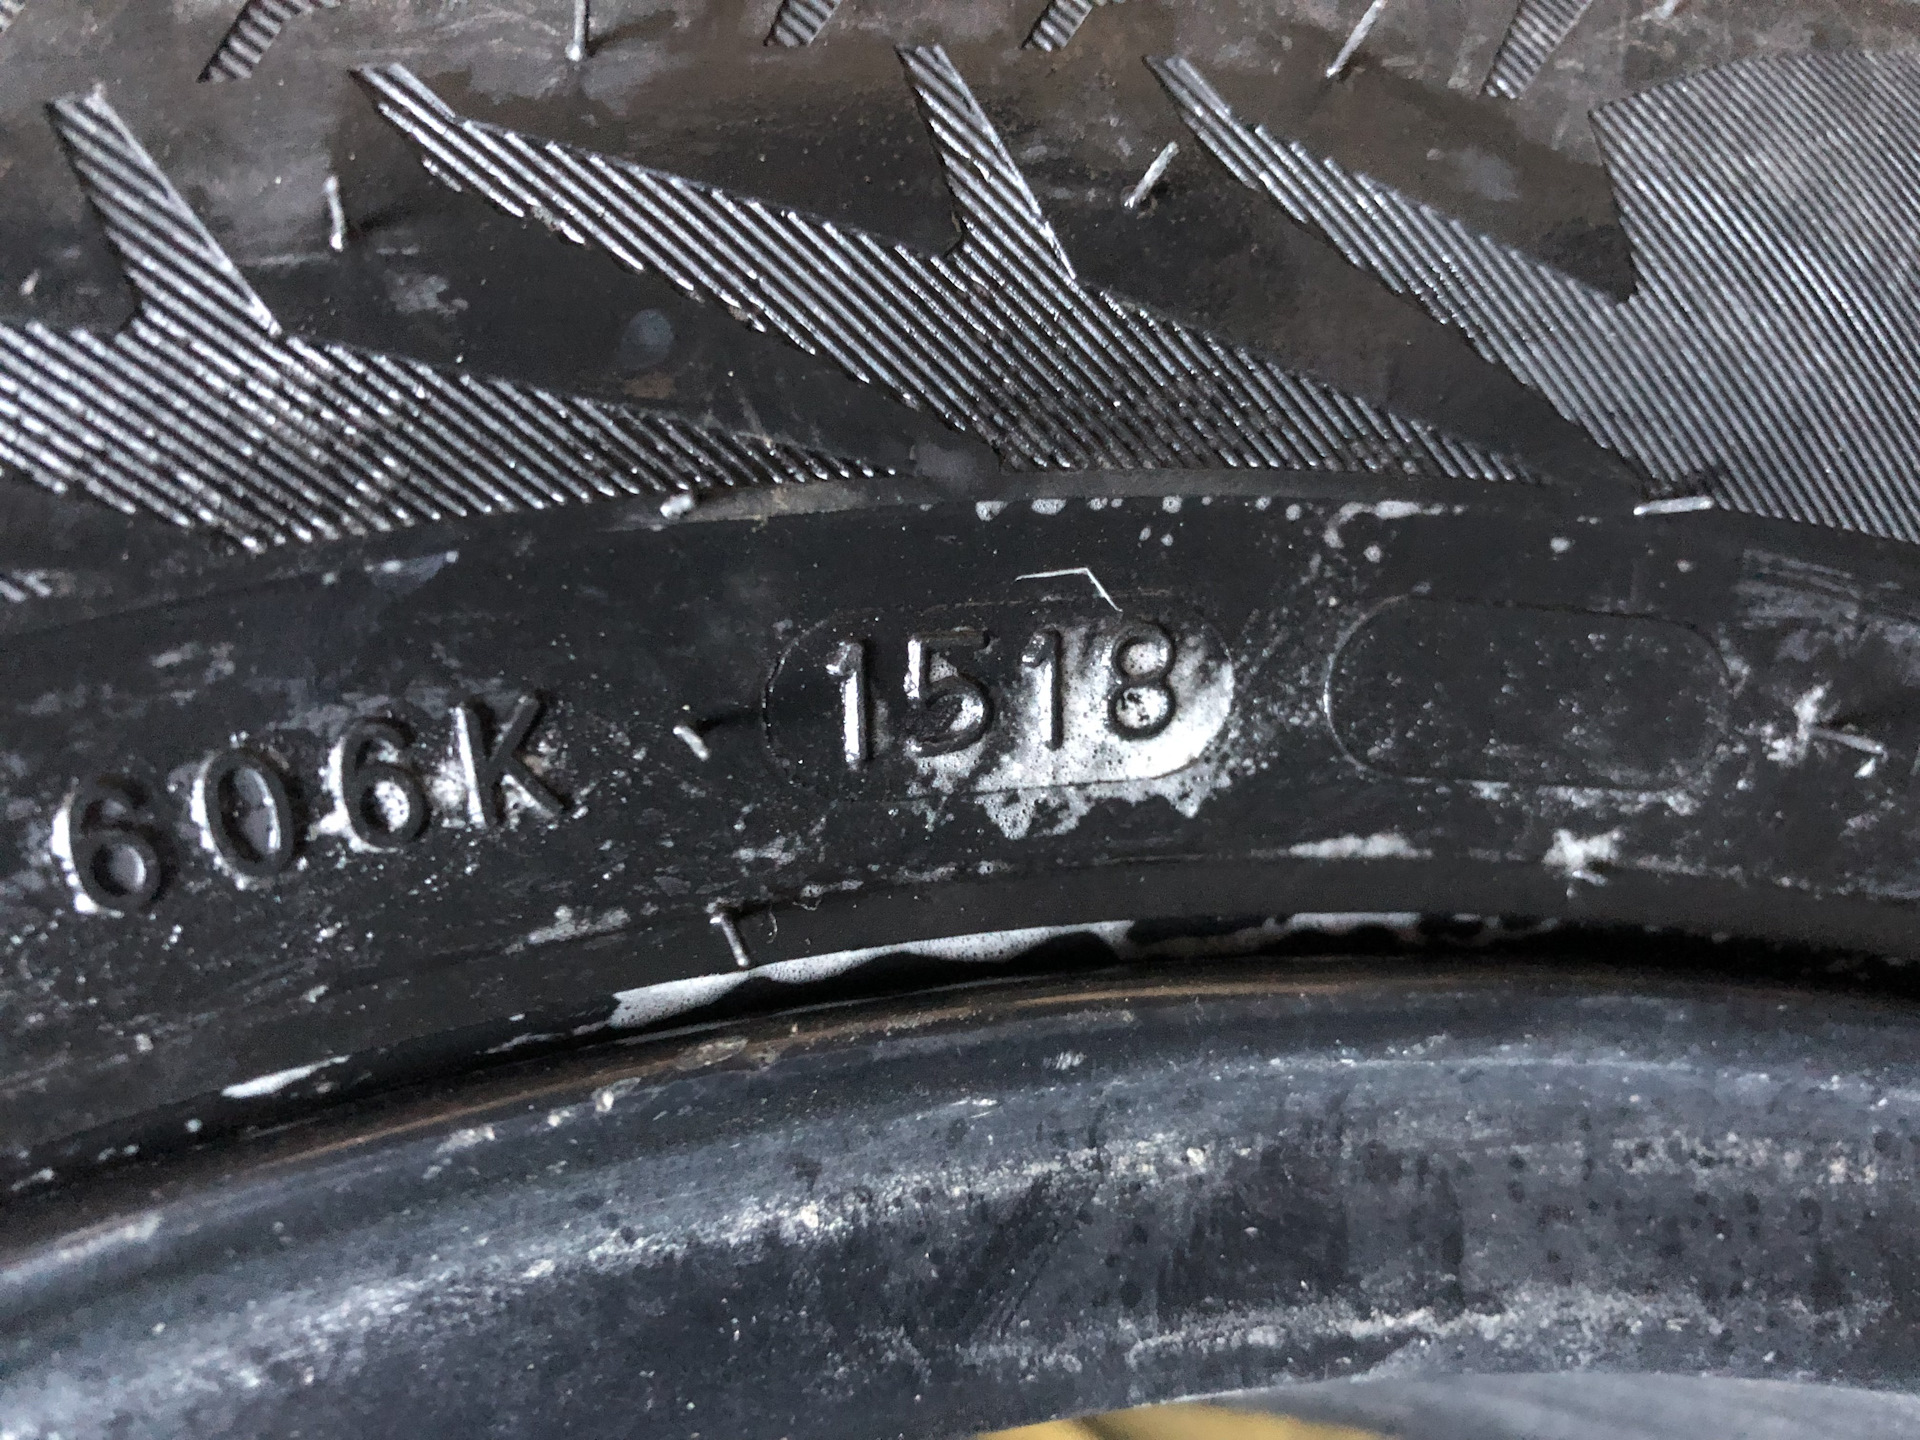 Где на шинах указан год выпуска фото нокиа